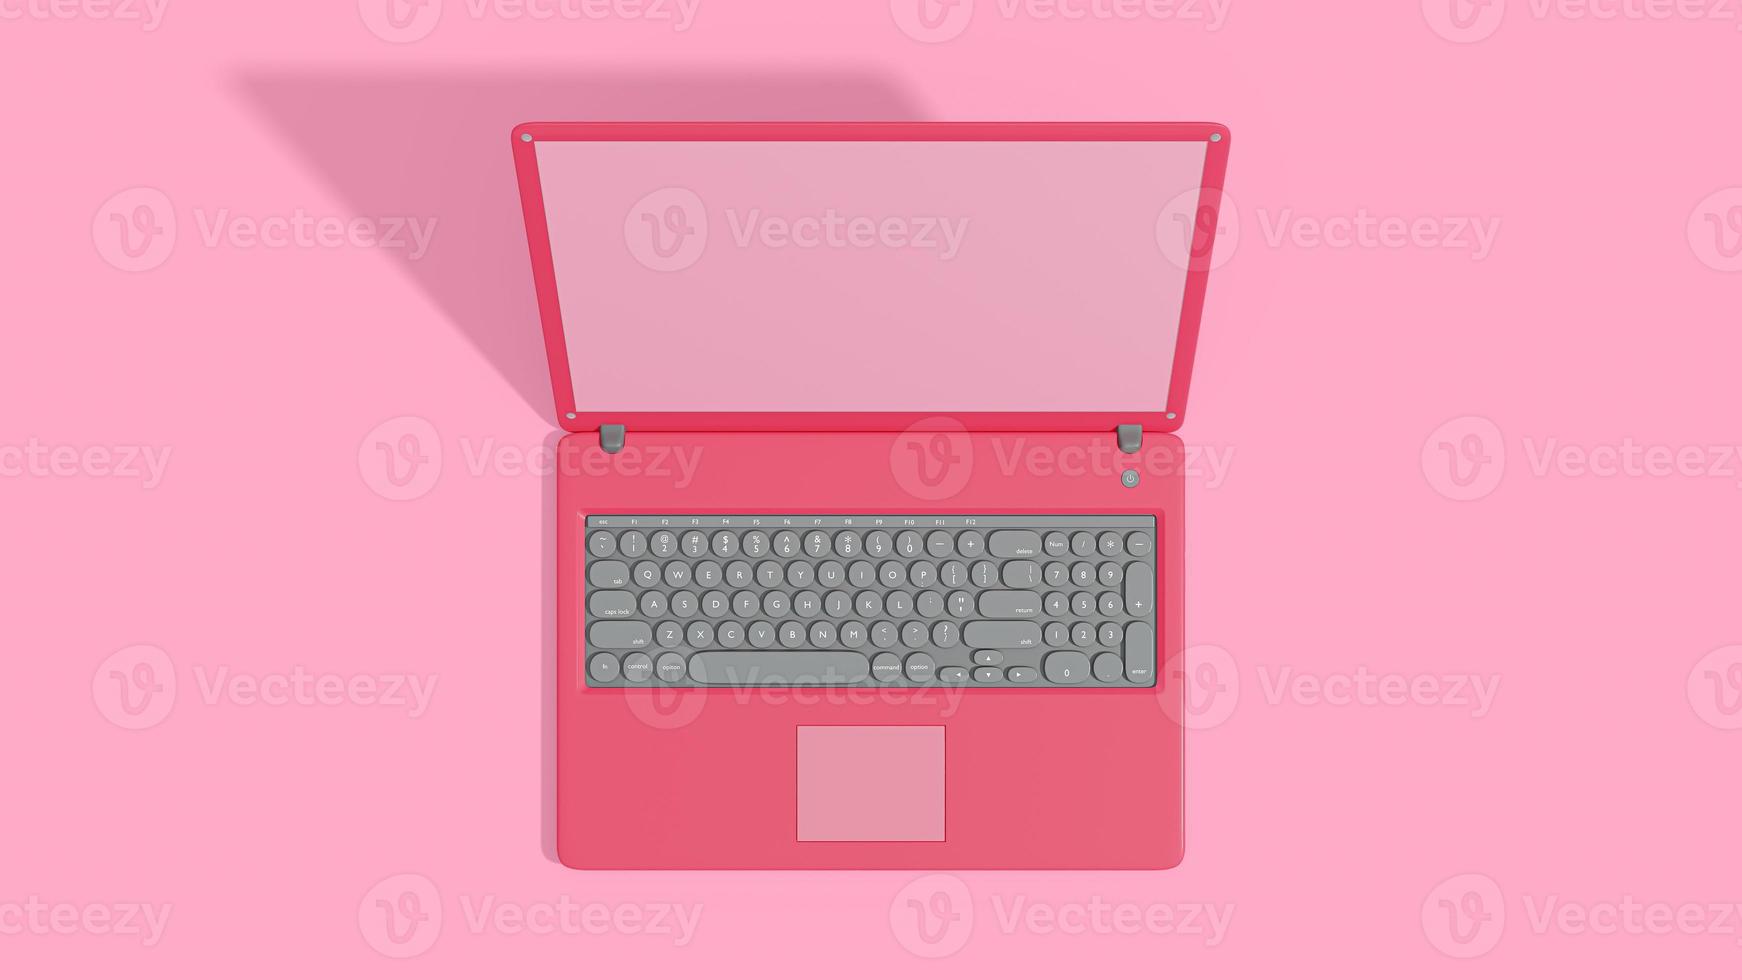 vista superior de la pantalla vacía del portátil rosa. computadora de maqueta aislada. foto